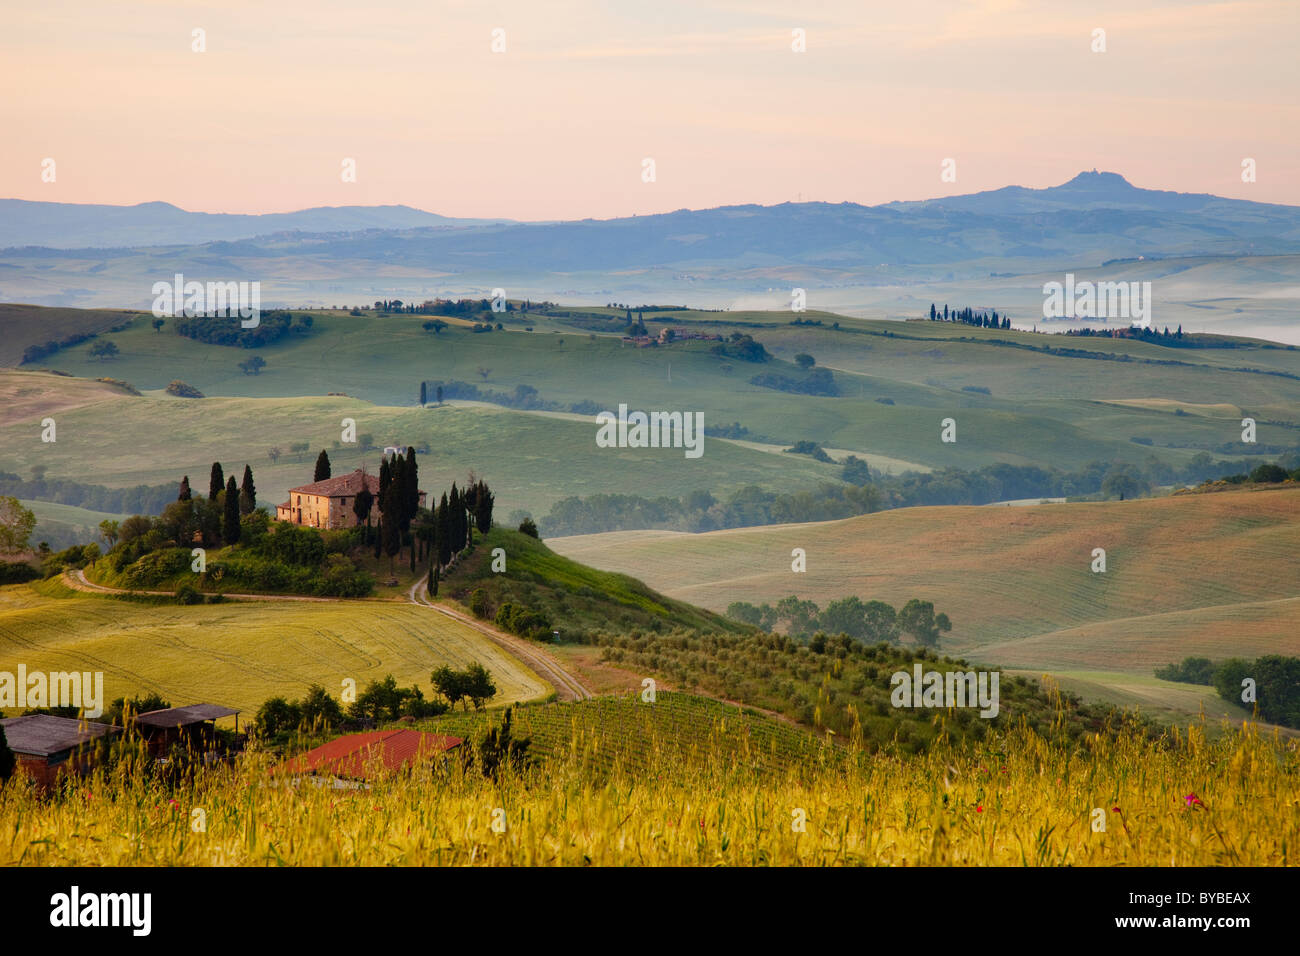 Podere Belvedere e la campagna toscana all'alba nei pressi di San Quirico d'Orcia, Toscana Italia Foto Stock